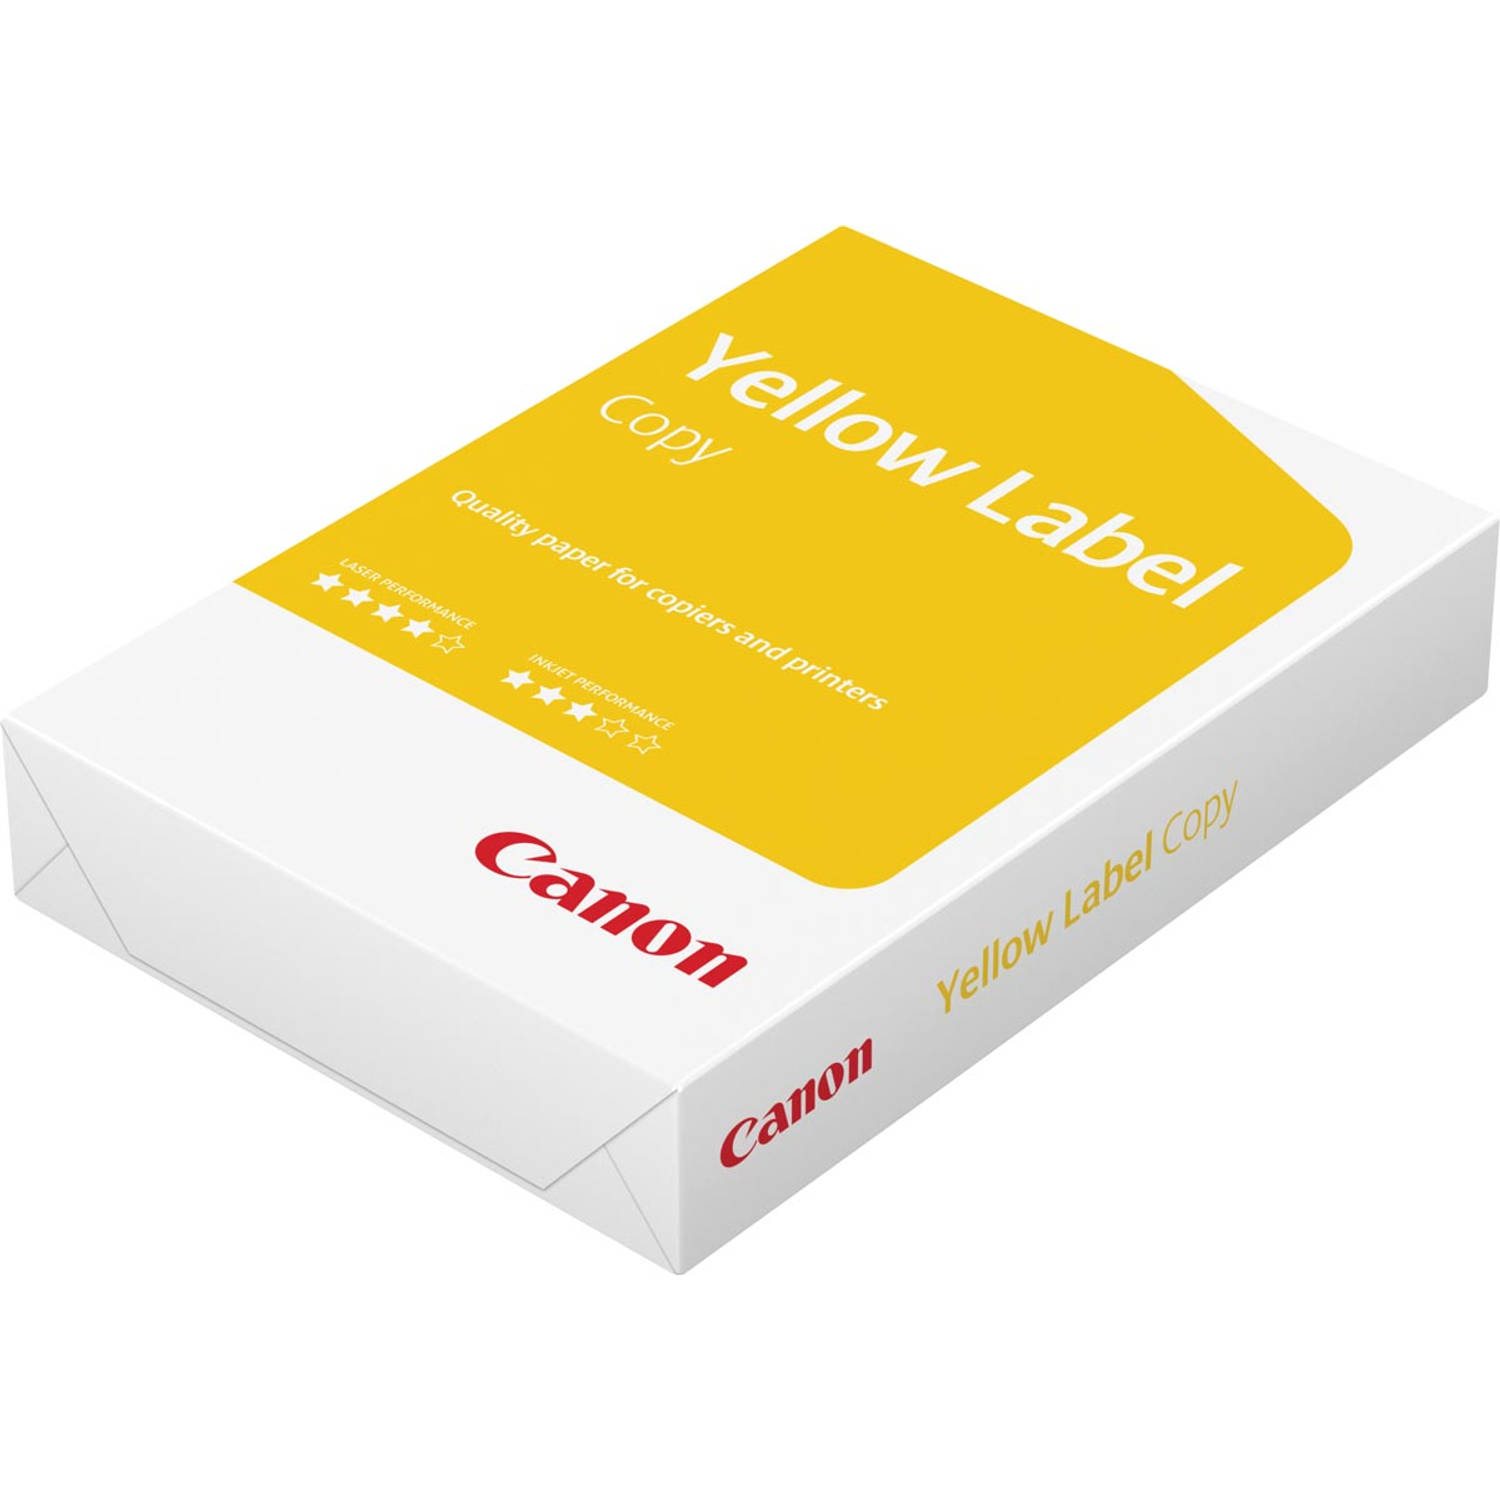 Canon Yellow Label Copy kopieerpapier ft A4, 80 g, pak van 500 vel